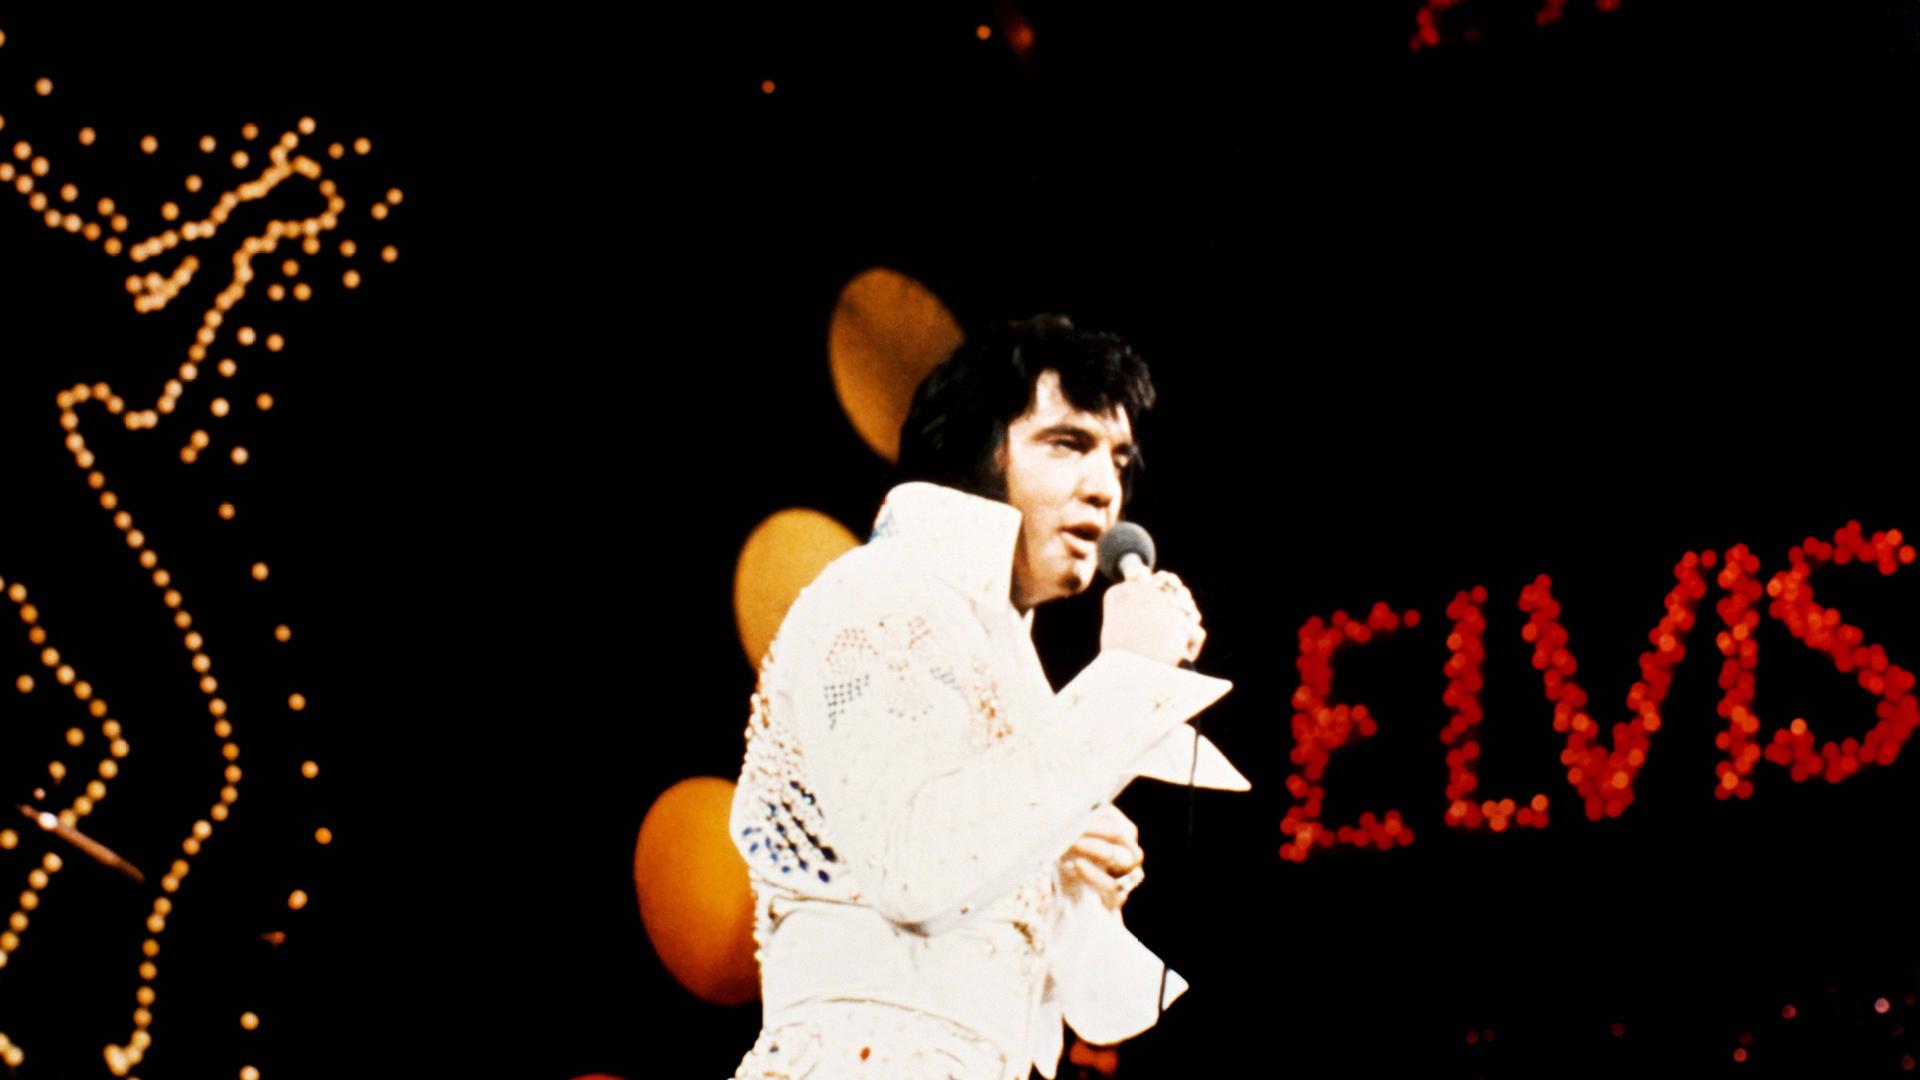 Elvis Presley bei einem Konzert, im Hintergrund auf schwarzem Wand das Wort "ELVIS"